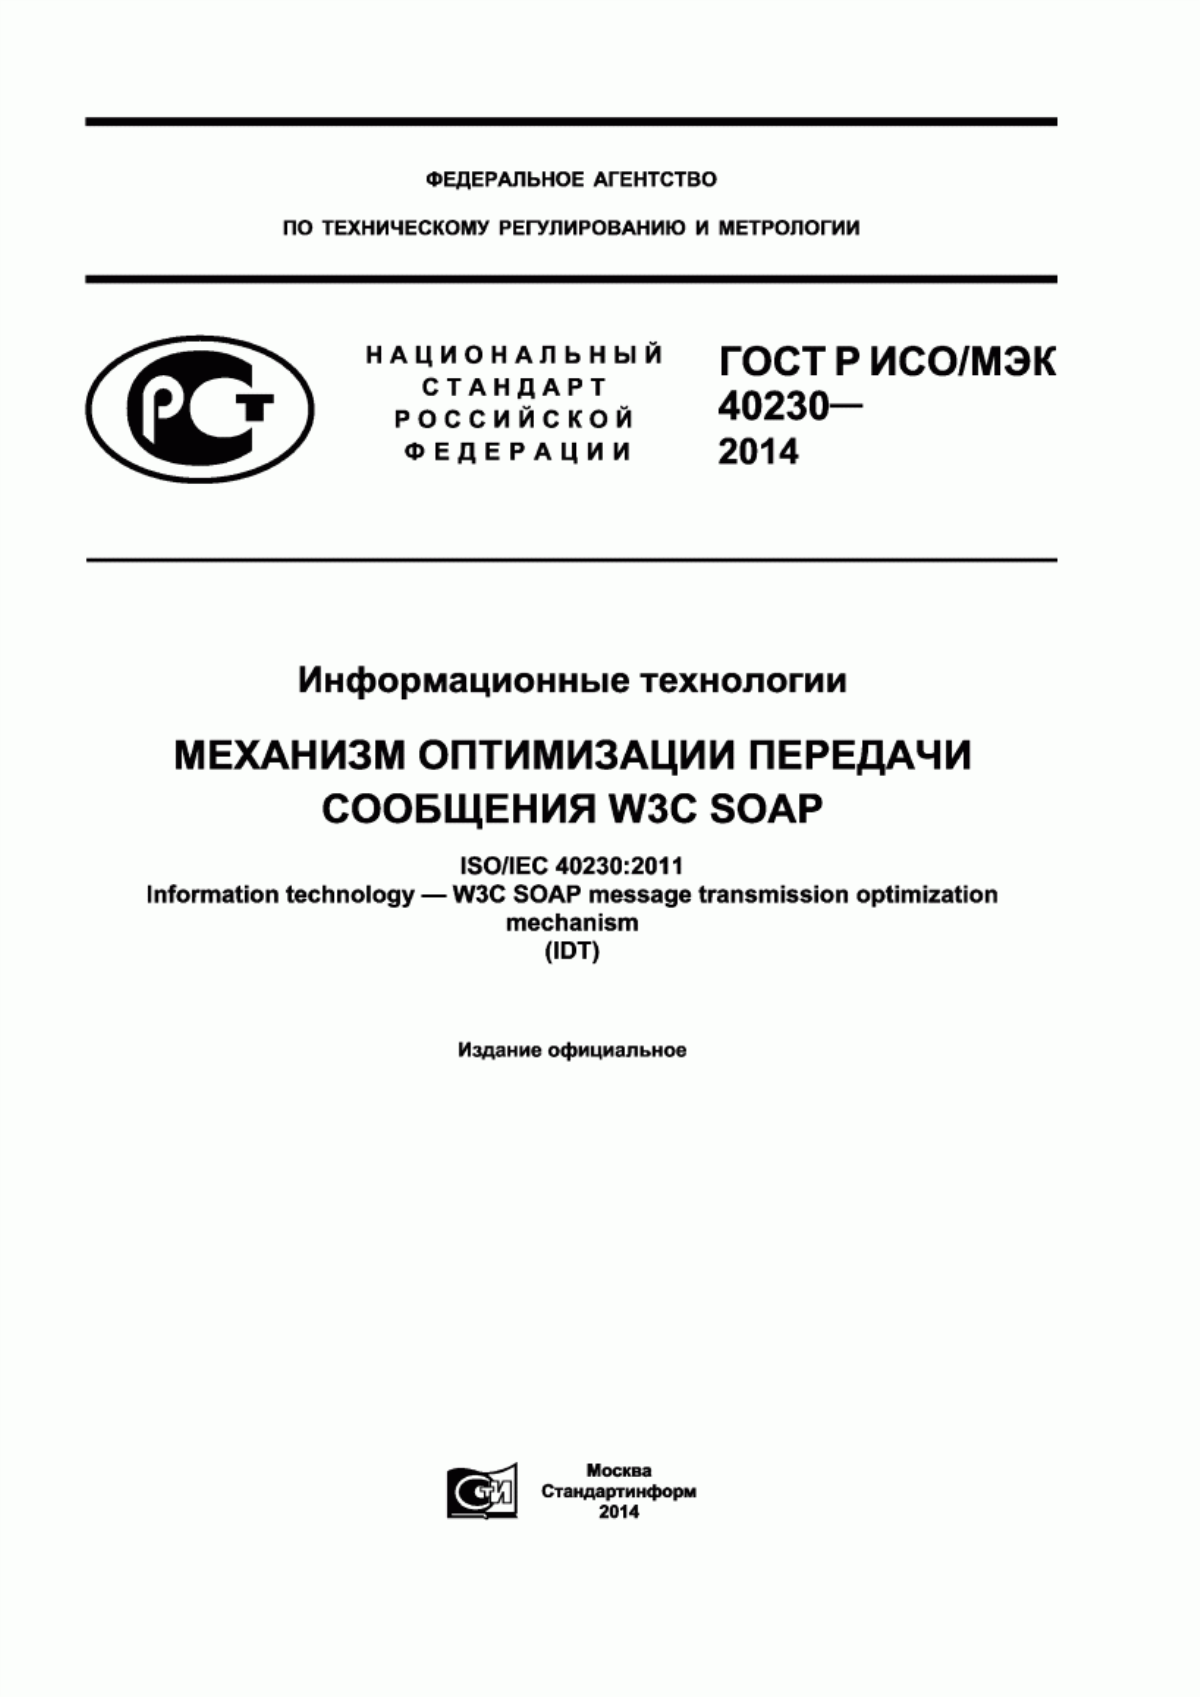 ГОСТ Р ИСО/МЭК 40230-2014 Информационные технологии. Механизм оптимизации передачи сообщения W3C SOAP